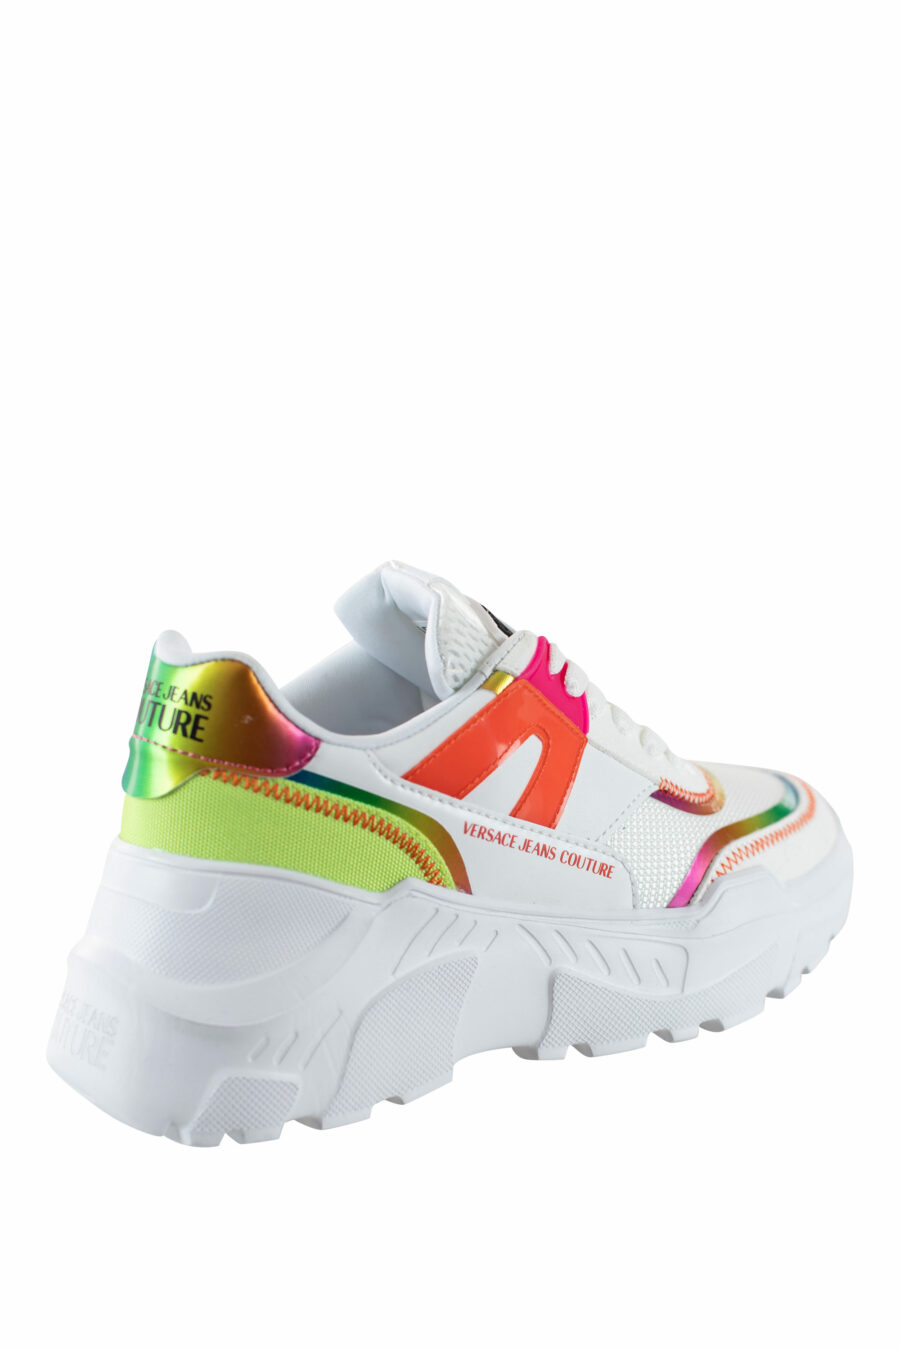 Zapatillas blancas multicolor reflectivo - IMG 4493